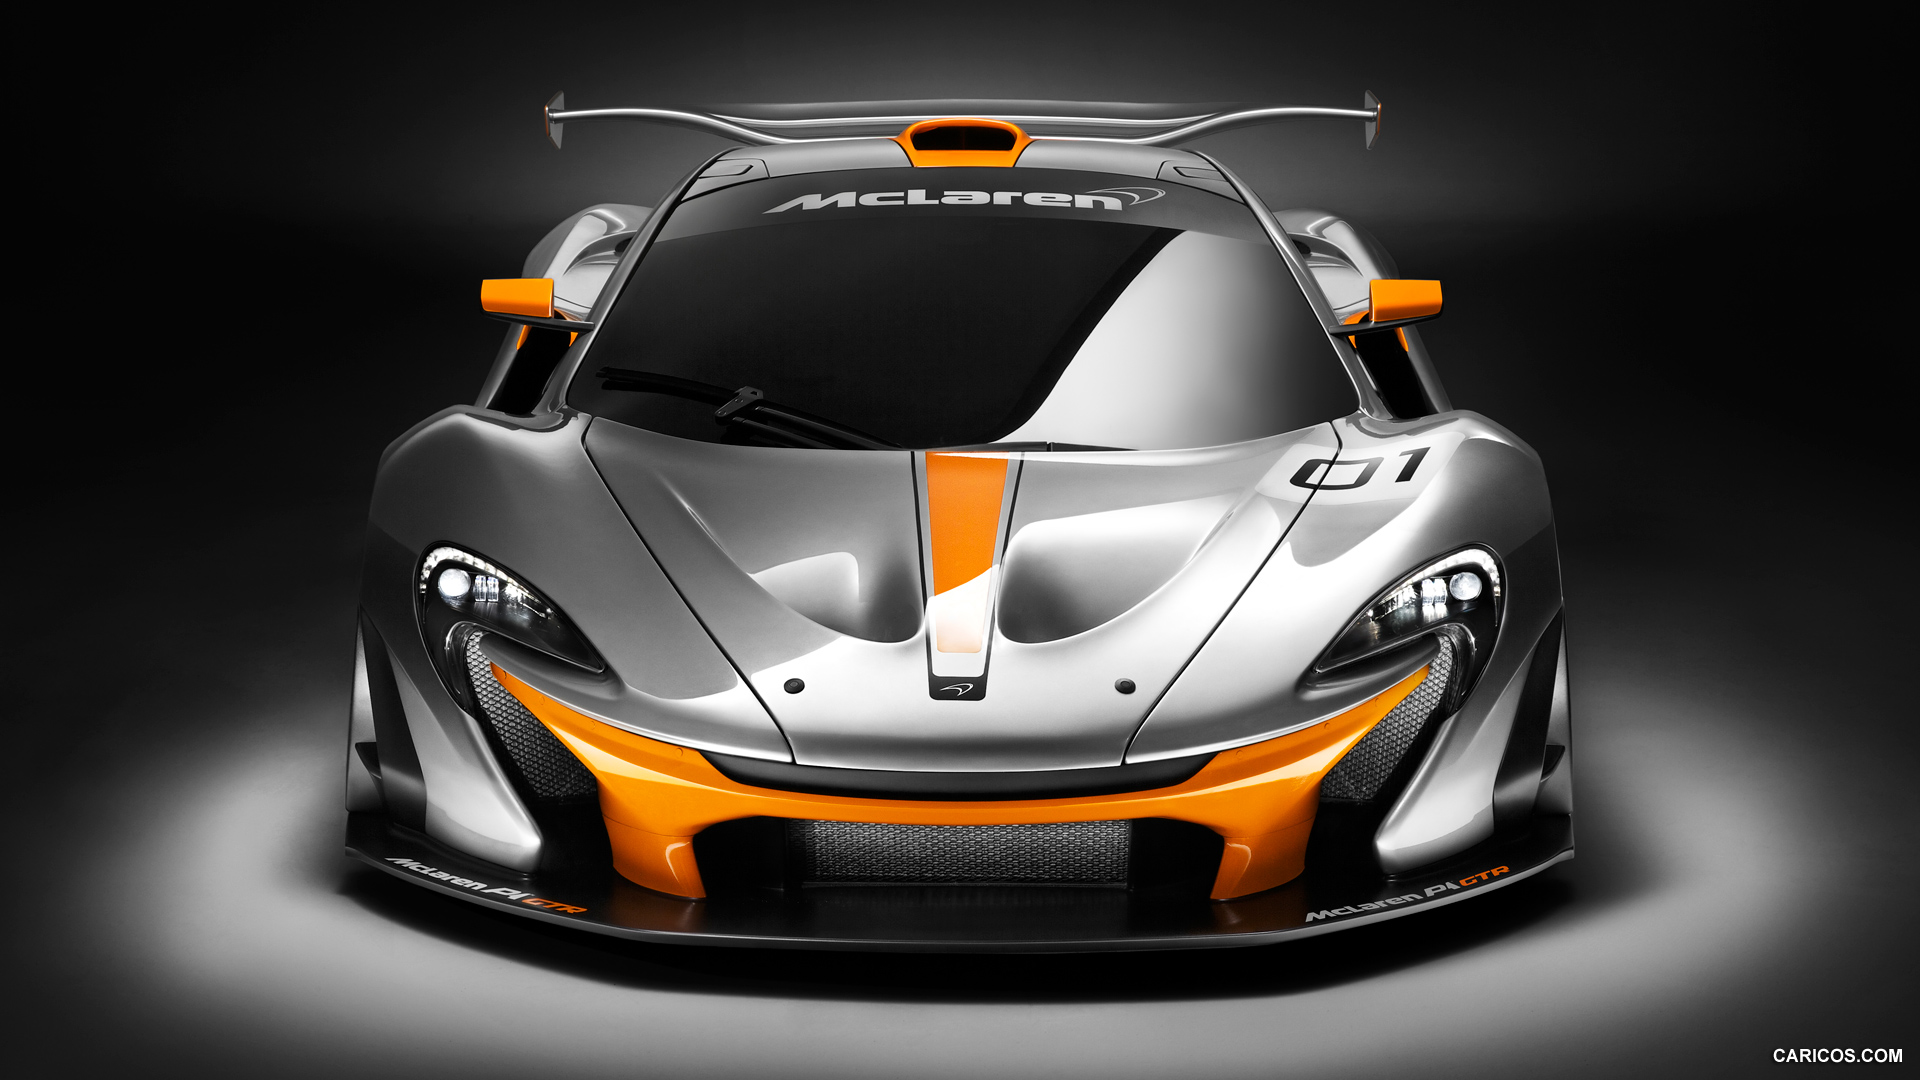 2014 McLaren P1 GTR Concept  - Front, #1 of 8